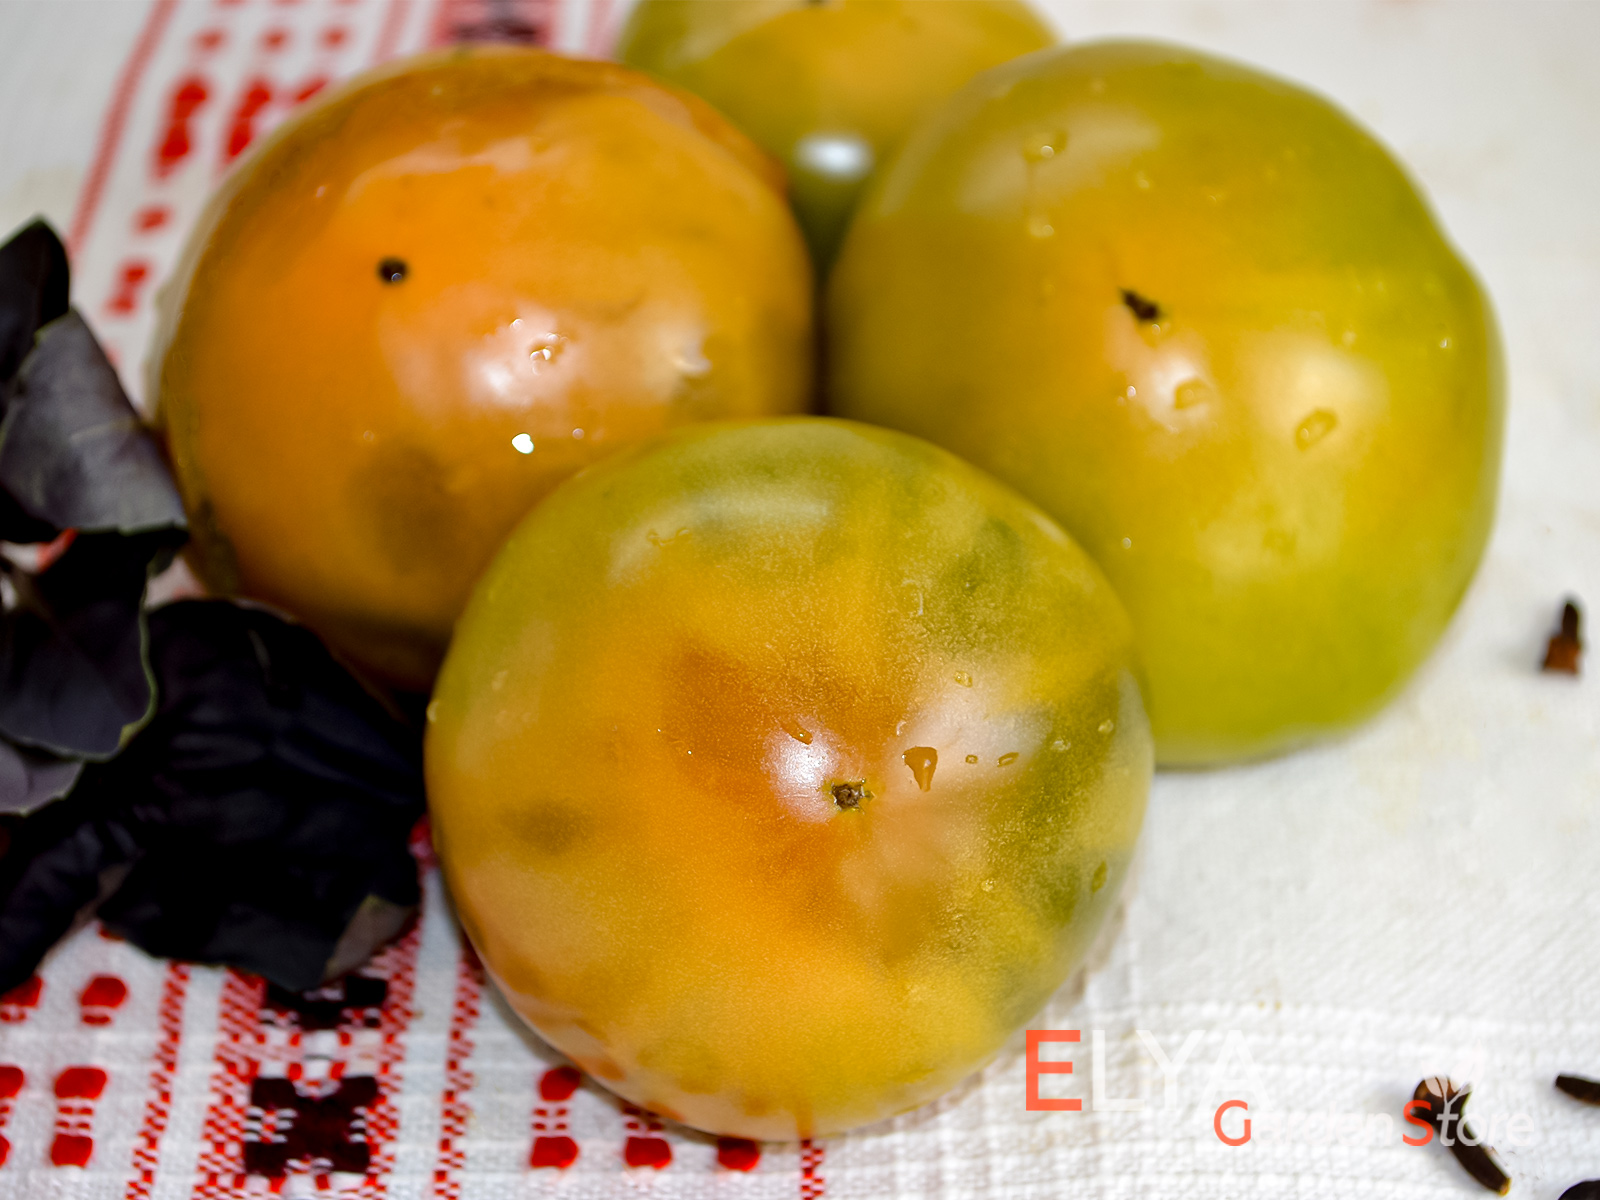 Коллекционный сорт томата гном Парфайт - необычная расцветка и отличный сладкий вкус - семена в магазине Elya Garden